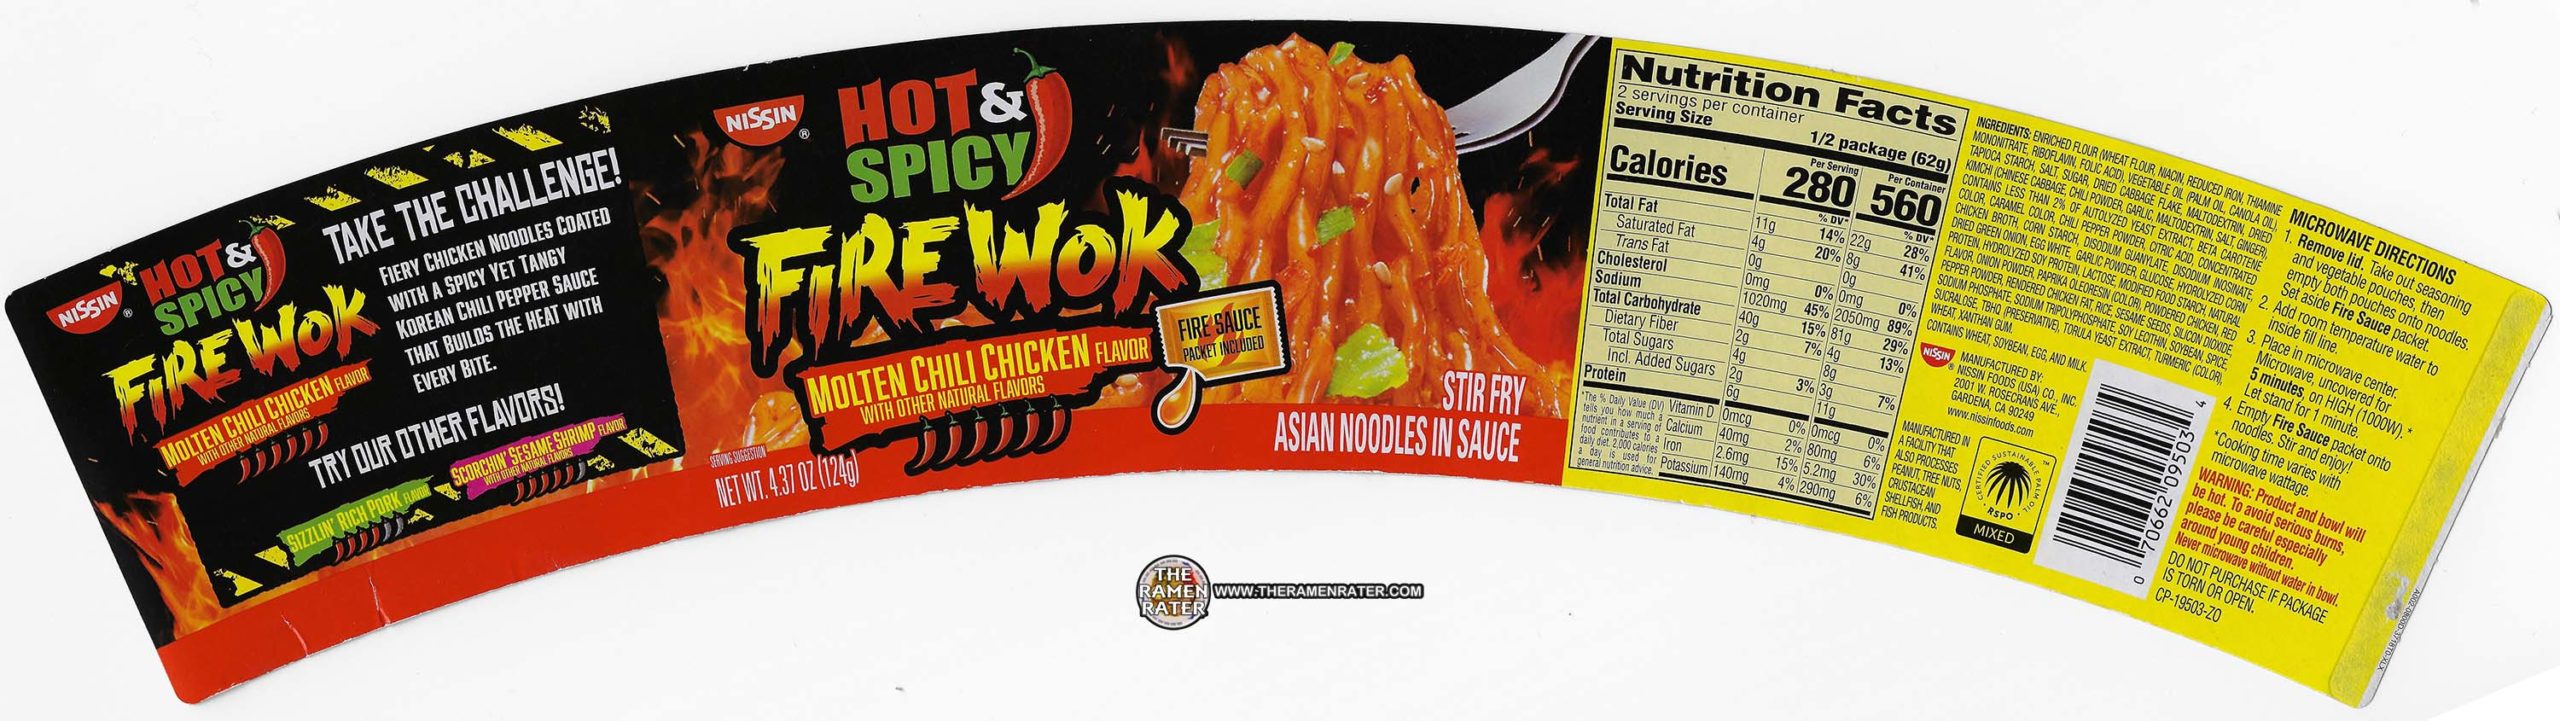 Hot & Spicy Fire Wok Molten Chili Chicken - Nissin Food